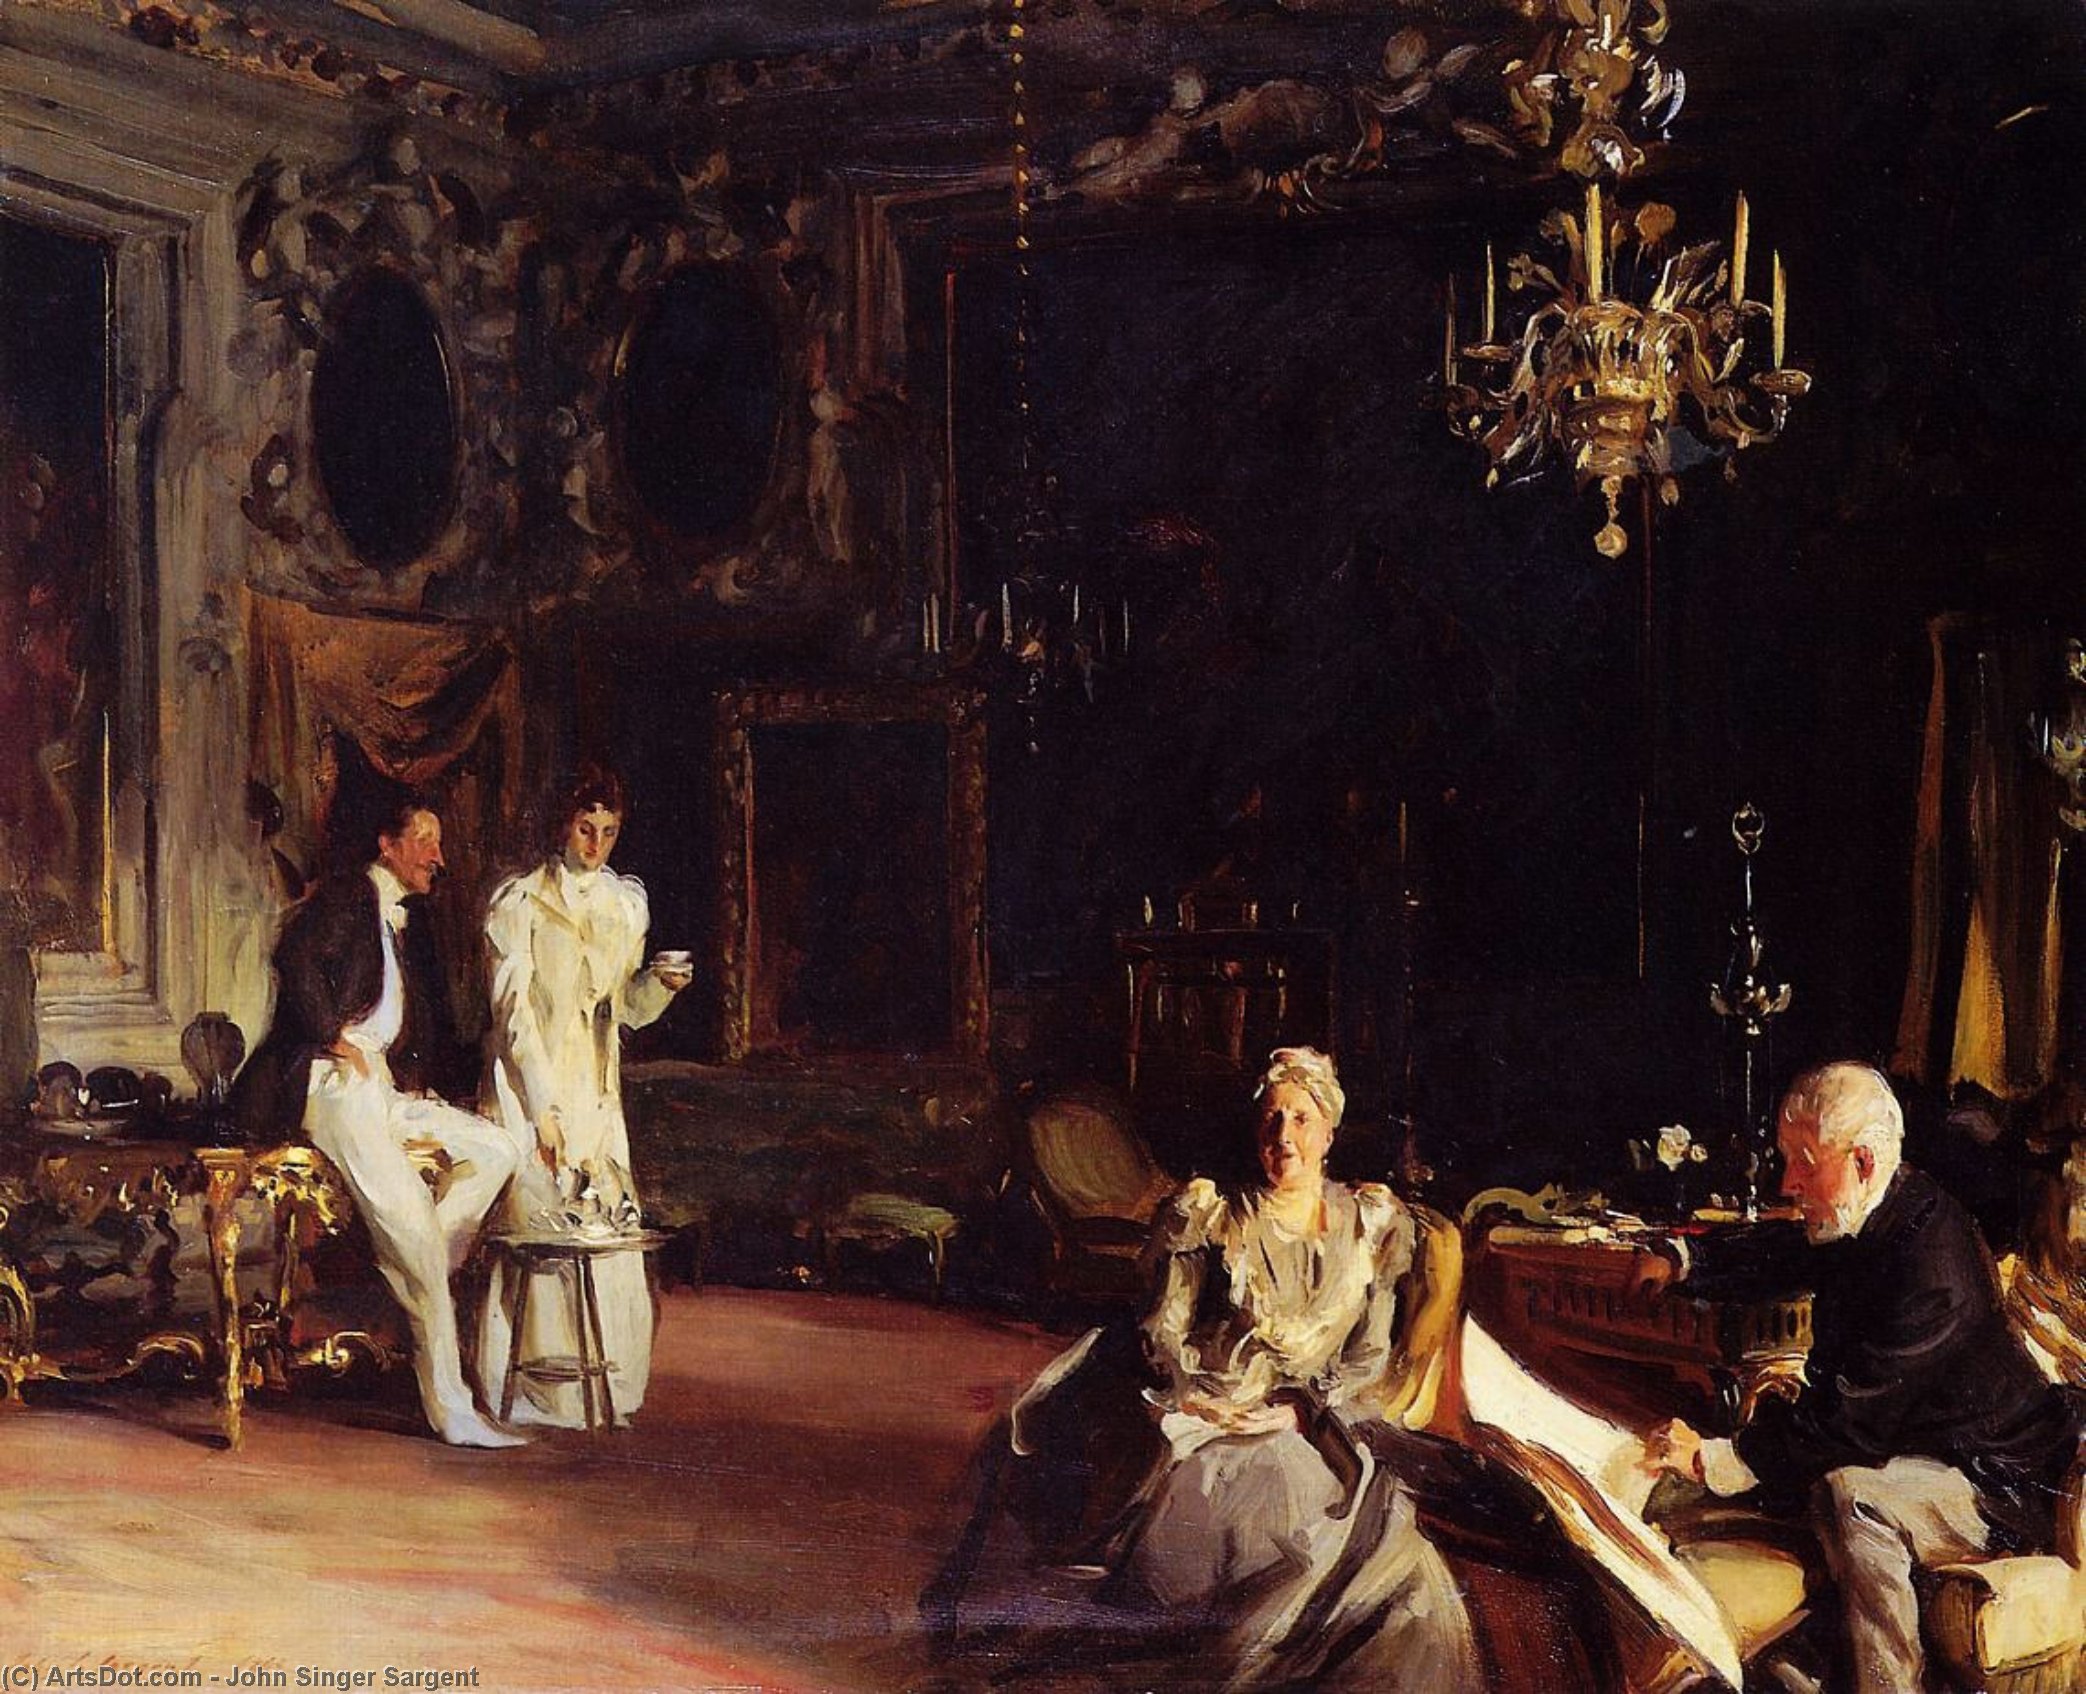 Acheter Reproductions D'art De Musée Un intérieur à Venise, 1899 de John Singer Sargent (1856-1925, Italy) | ArtsDot.com